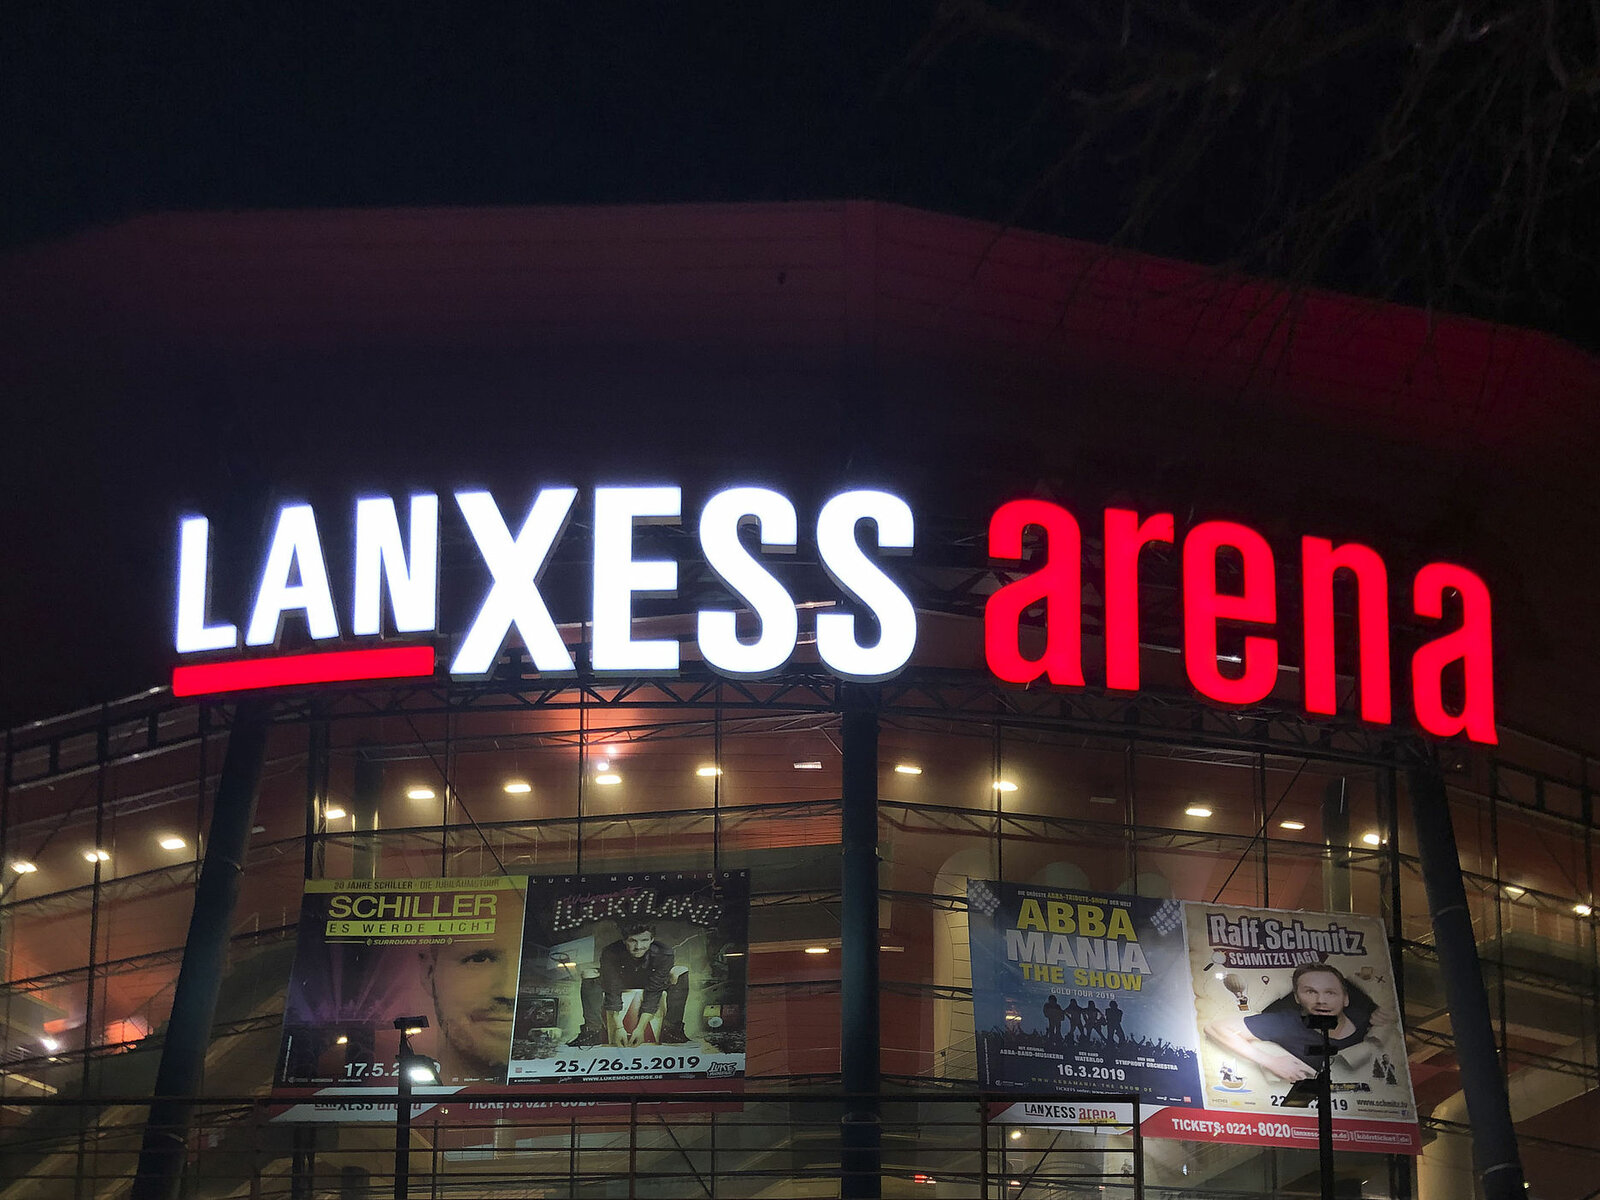 Lanxess Arena 2